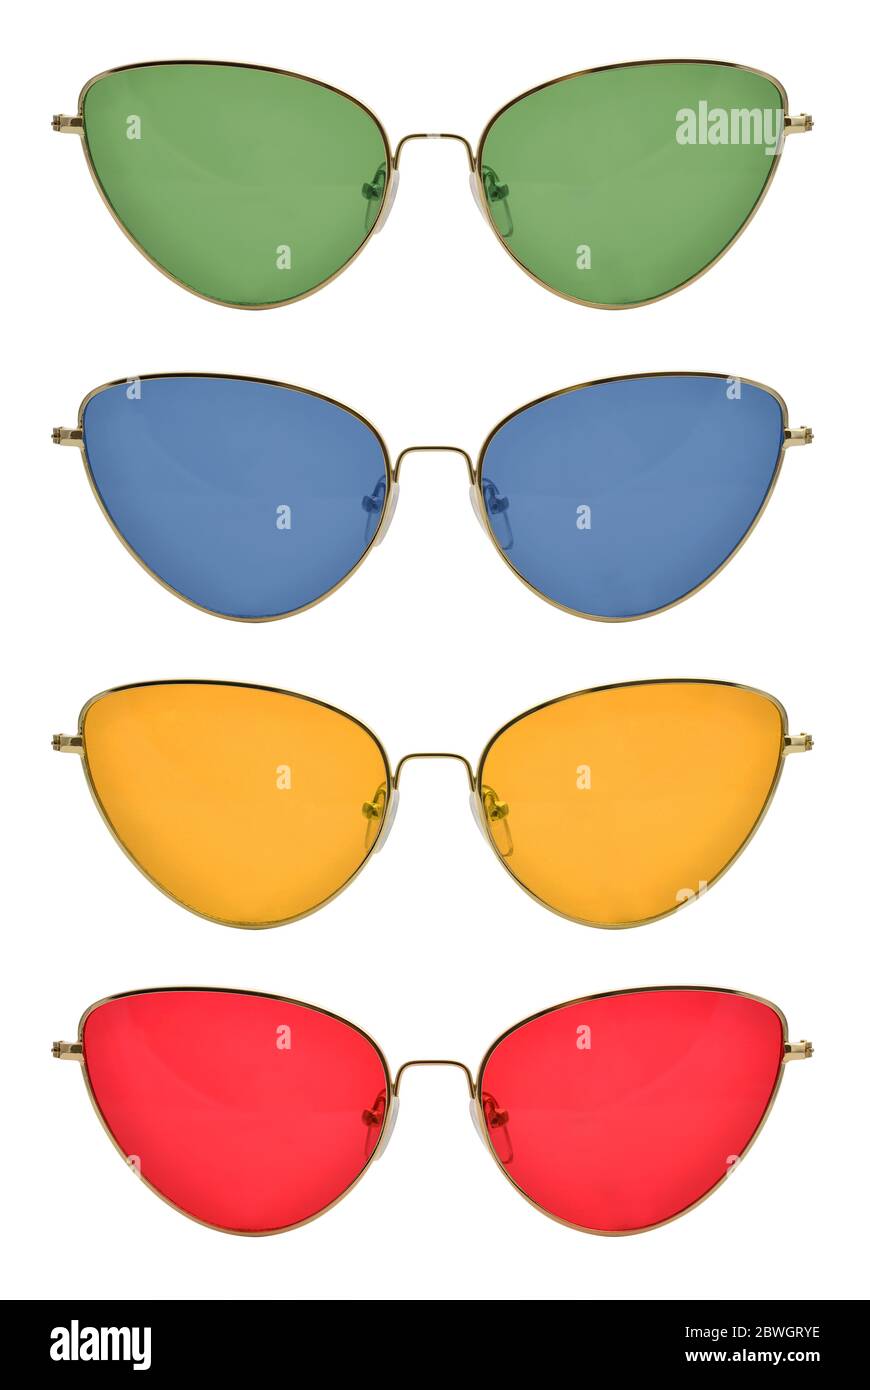 Gafas de sol con marco metálico, forma de ojo de gato, lentes rojas,  amarillas, verdes y azules, aisladas sobre fondo blanco con trazado de  recorte Fotografía de stock - Alamy